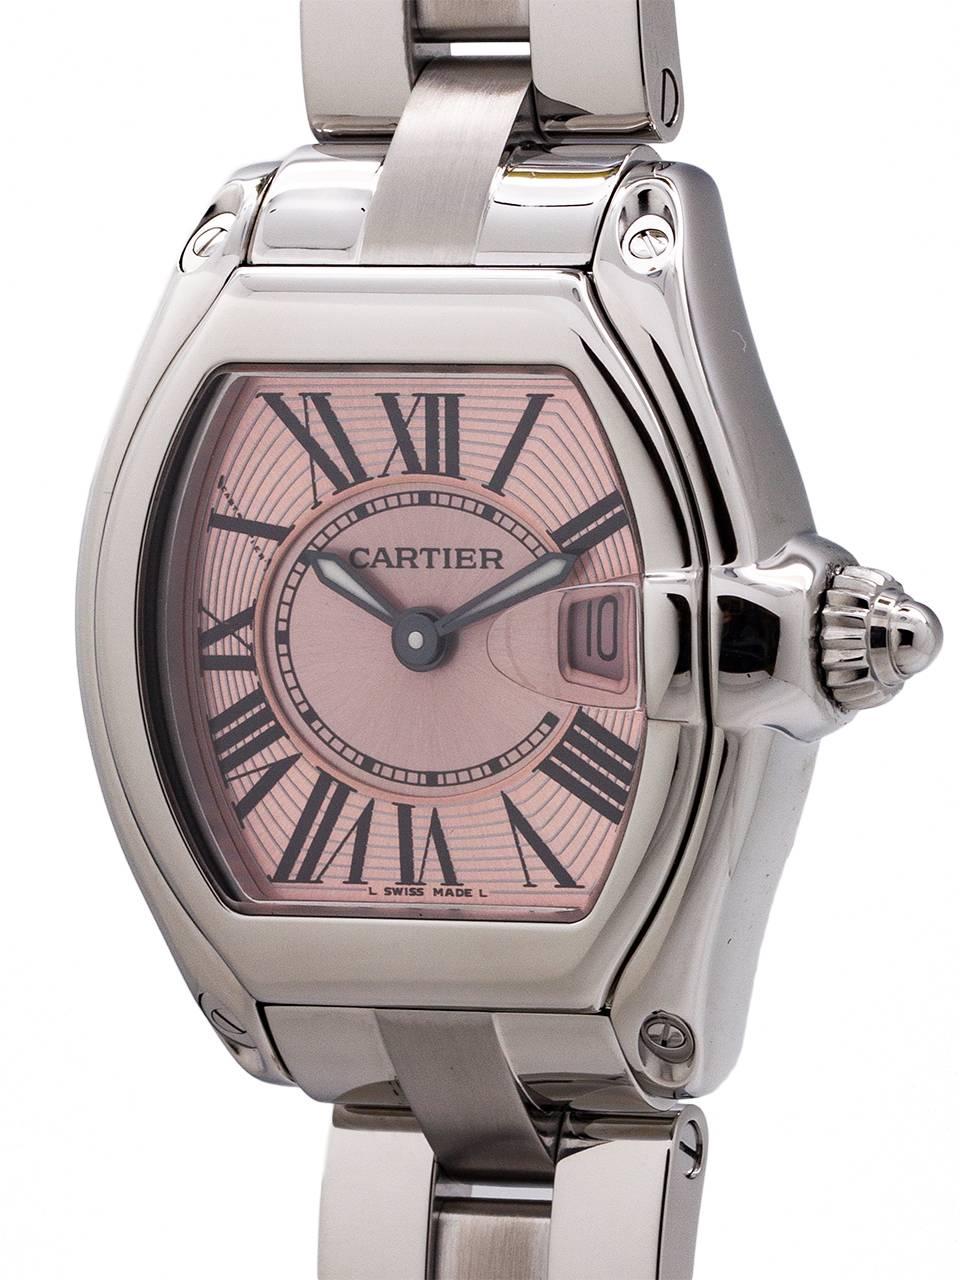 ltd quartz wrist watch